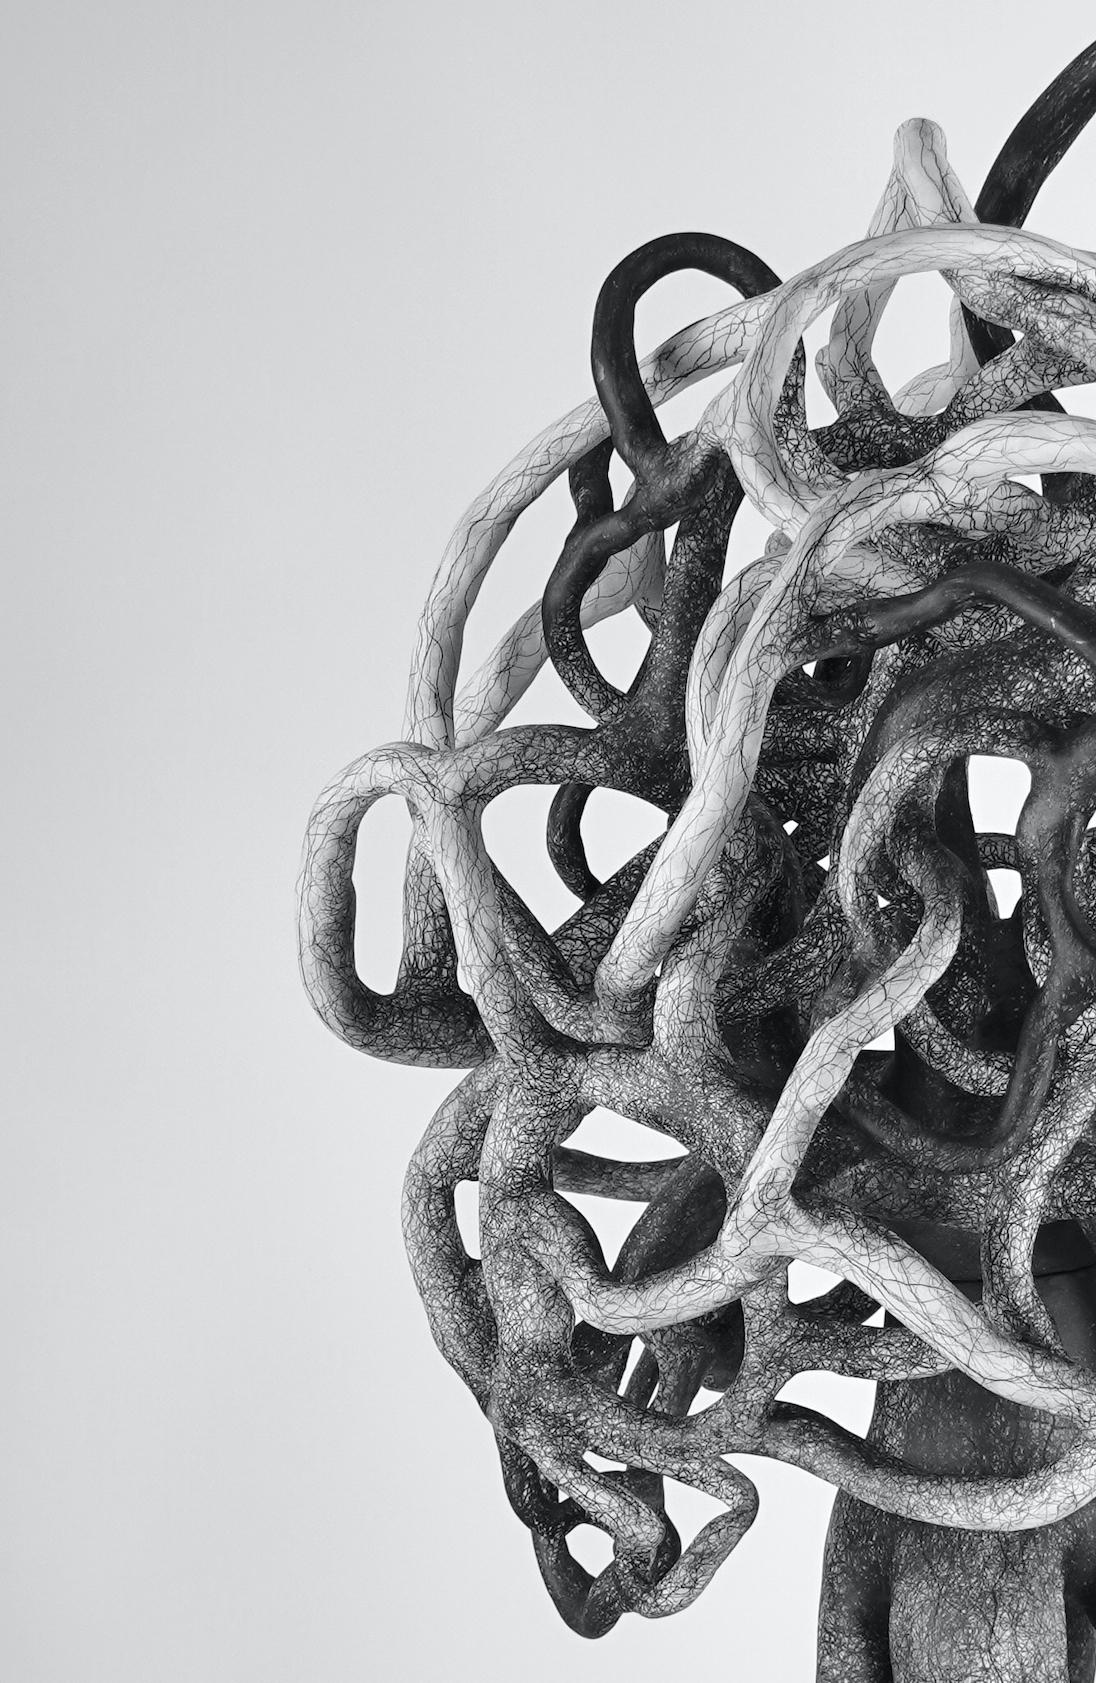 Judi Tavill (NJ) schafft biomorphe Abstraktionen, die Skulptur und Zeichnung miteinander verbinden und sich auf die komplizierte Erfahrung von Verbindung und Verflechtung beziehen.
Nach ihrem Bachelor of Fine Arts (BFA) an der Washington University